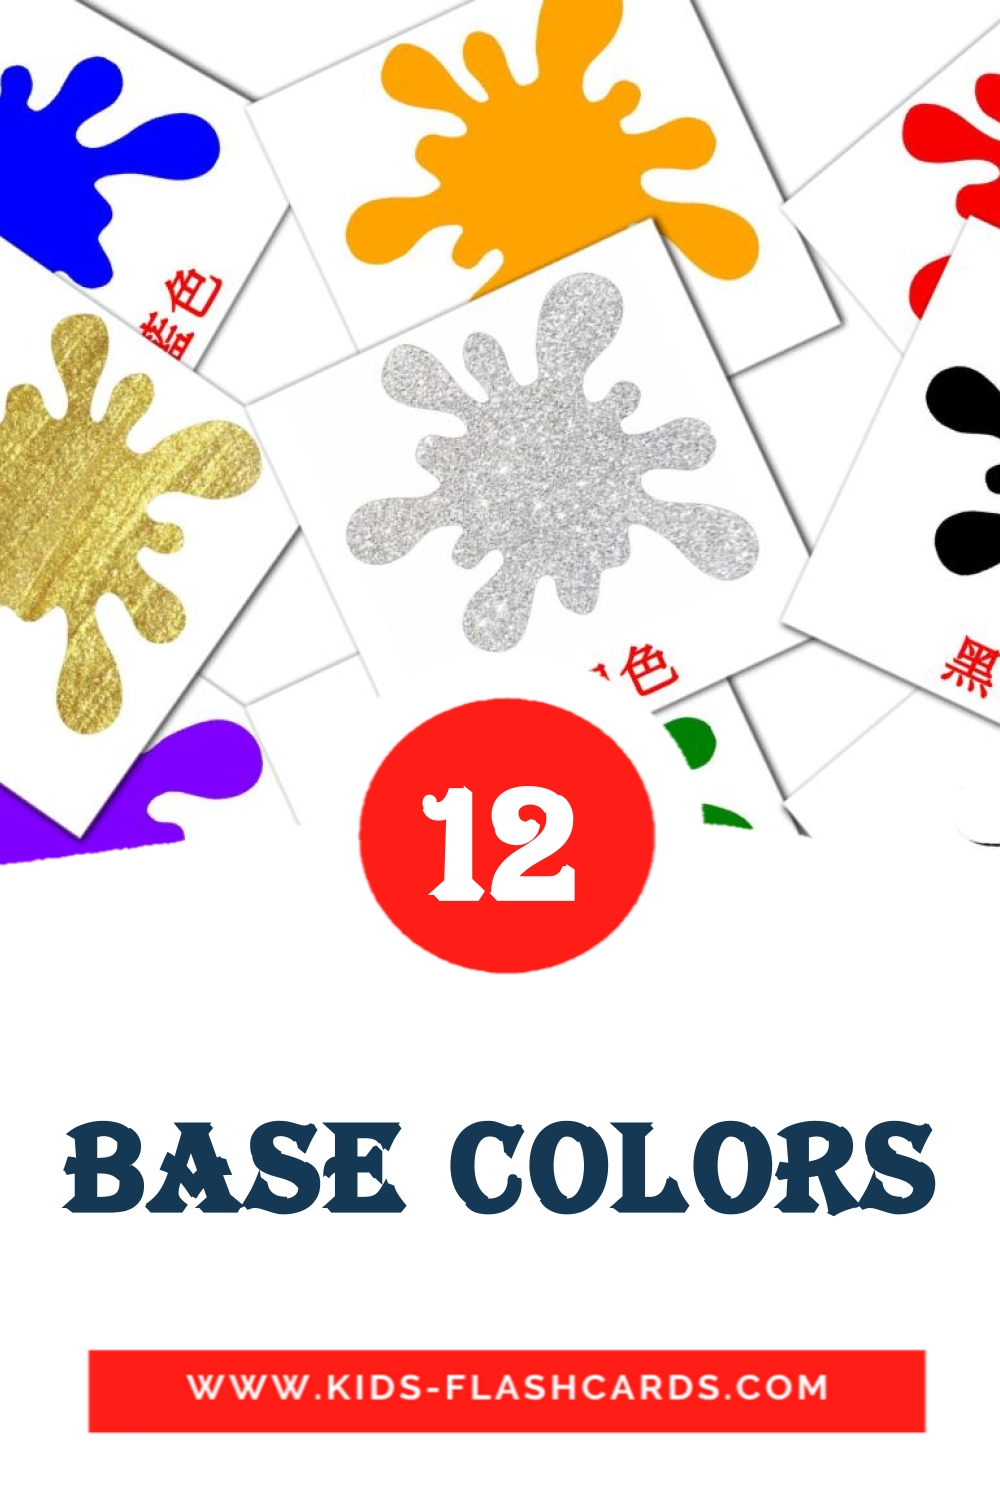 base colors на китайский(Традиционный) для Детского Сада (12 карточек)